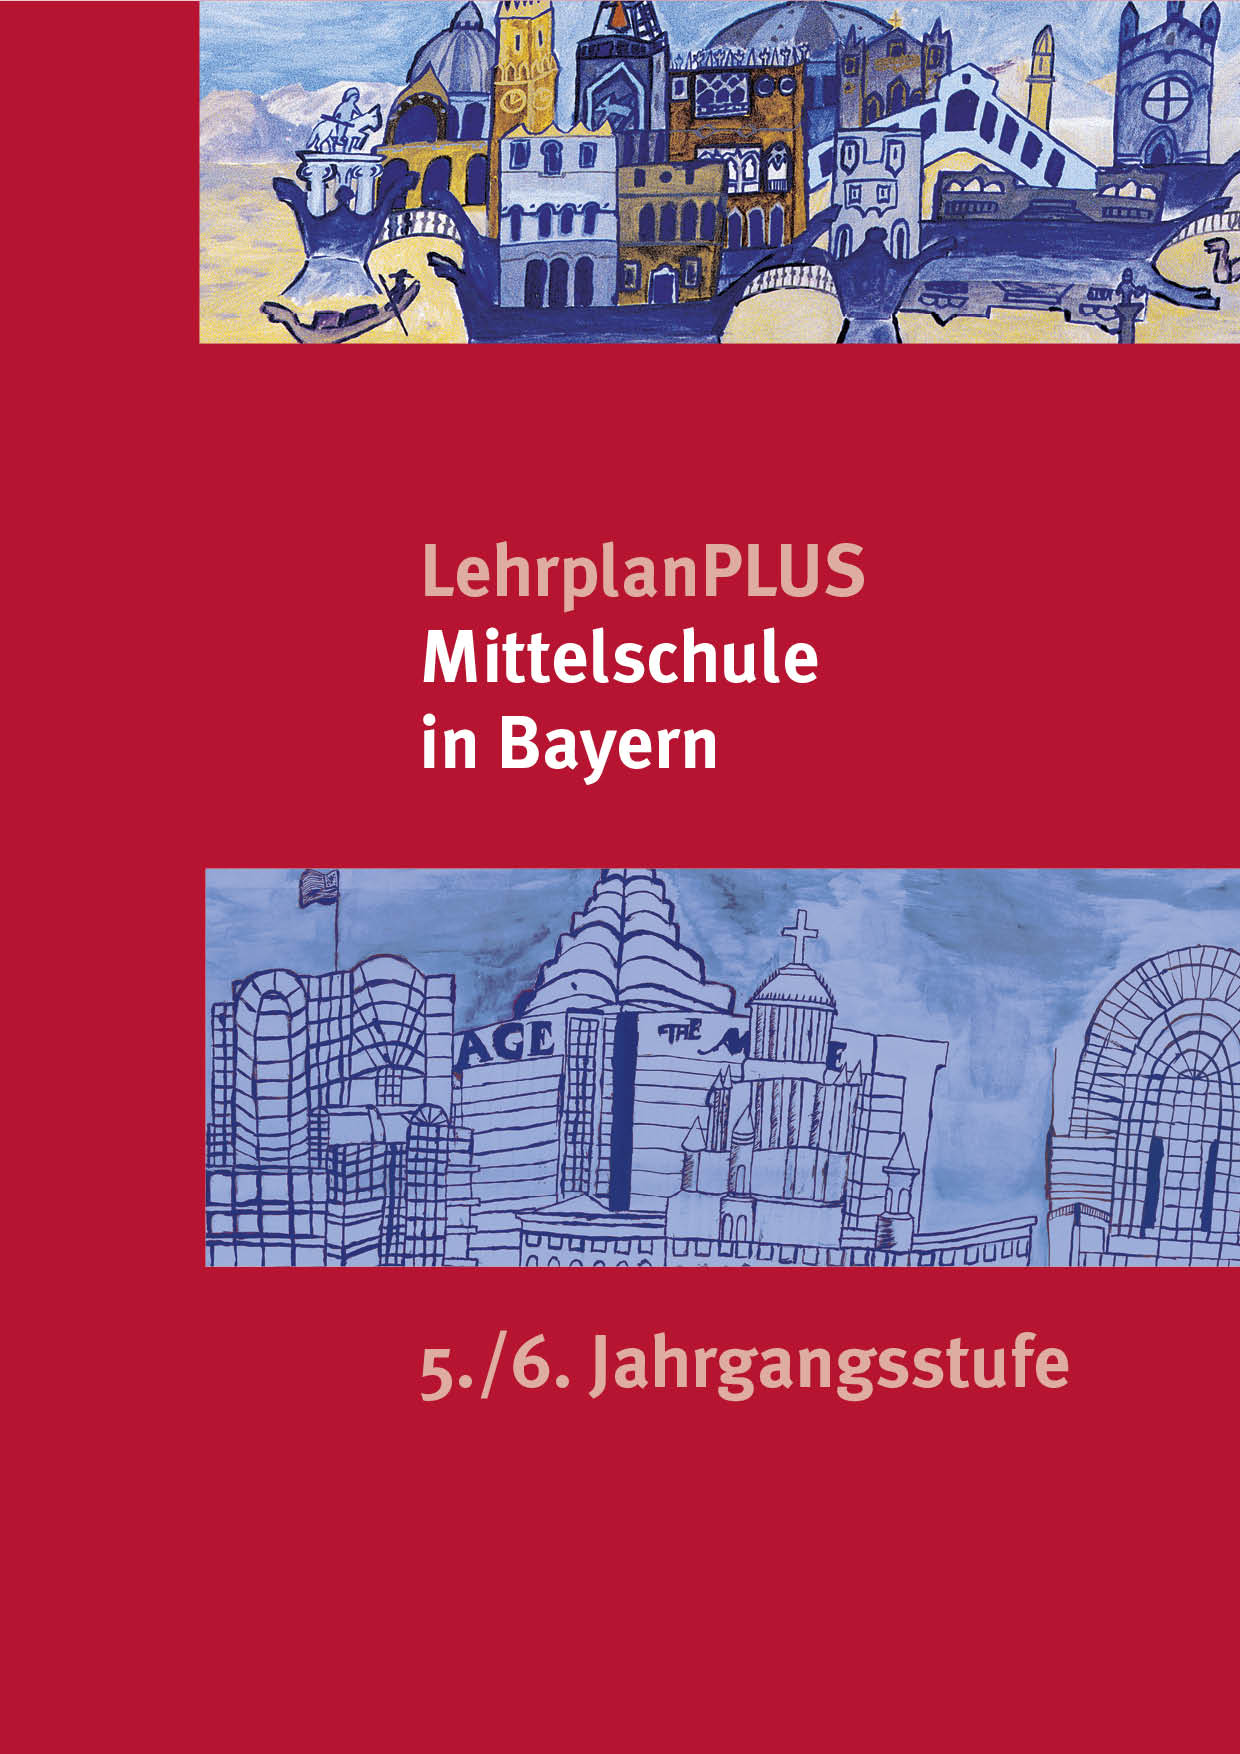 LehrplanPLUS für die Mittelschule 5.-6. Jahrgangsstufe, 1. Auflage 2017